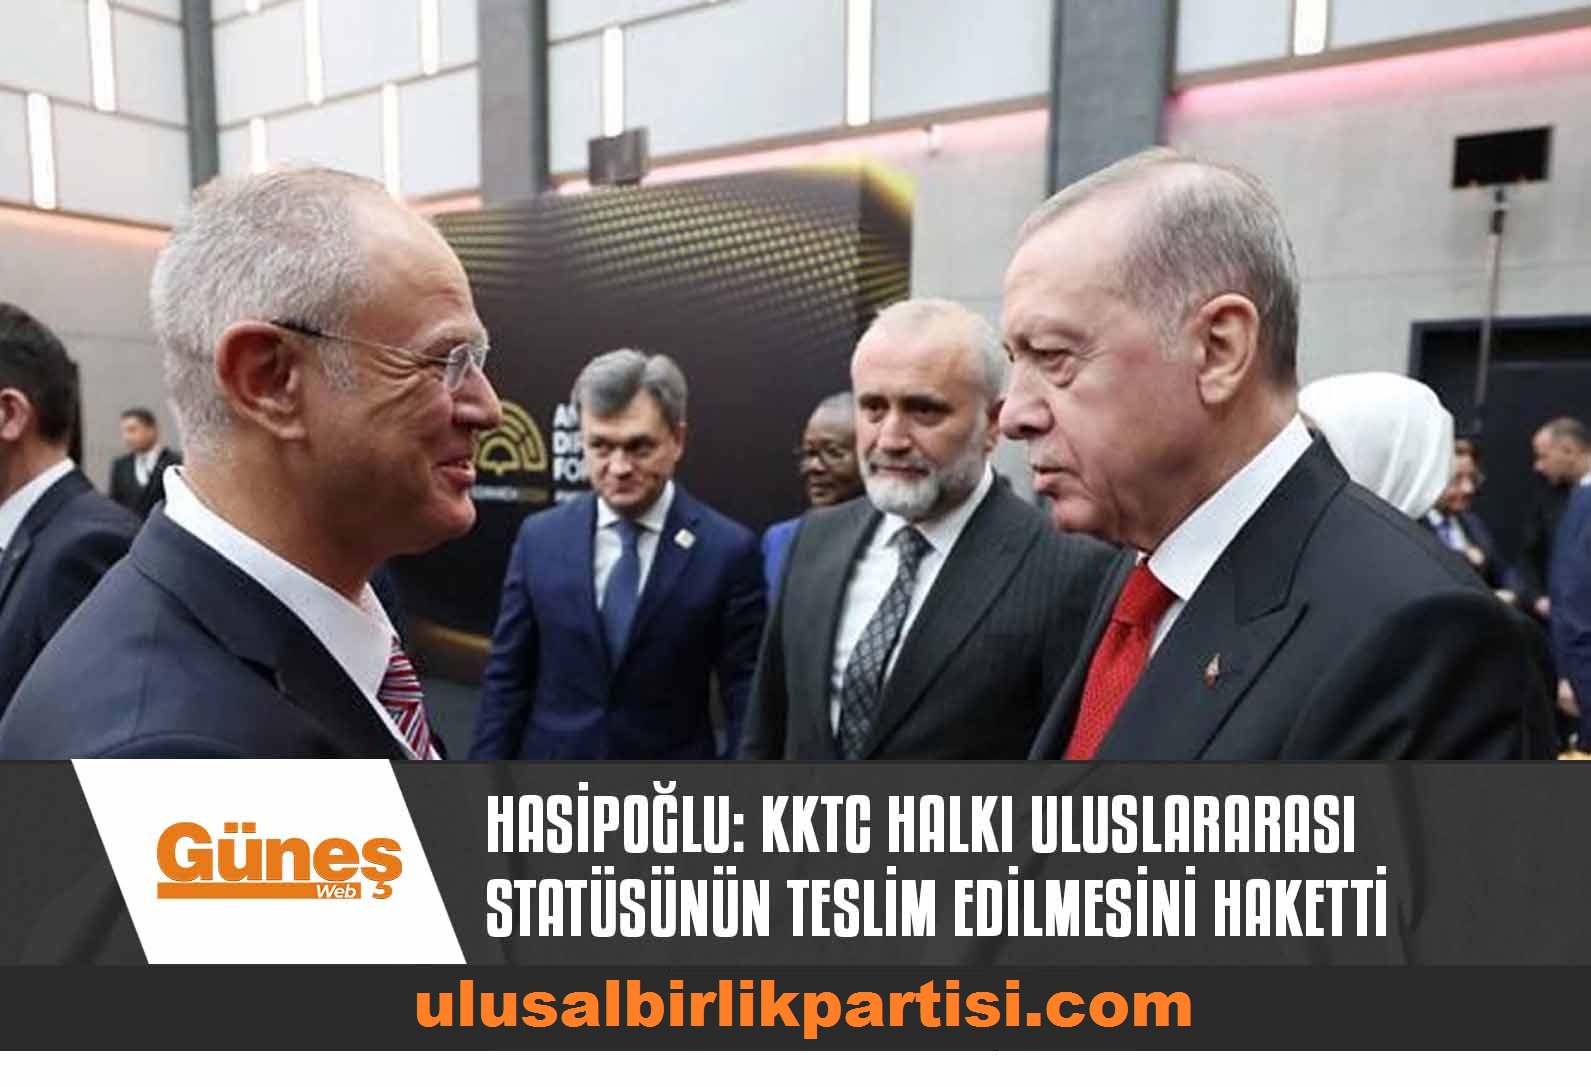 Read more about the article Hasipoğlu: Kuzey Kıbrıs Türk Halkı uluslararası statüsünün teslim edilmesini haketti